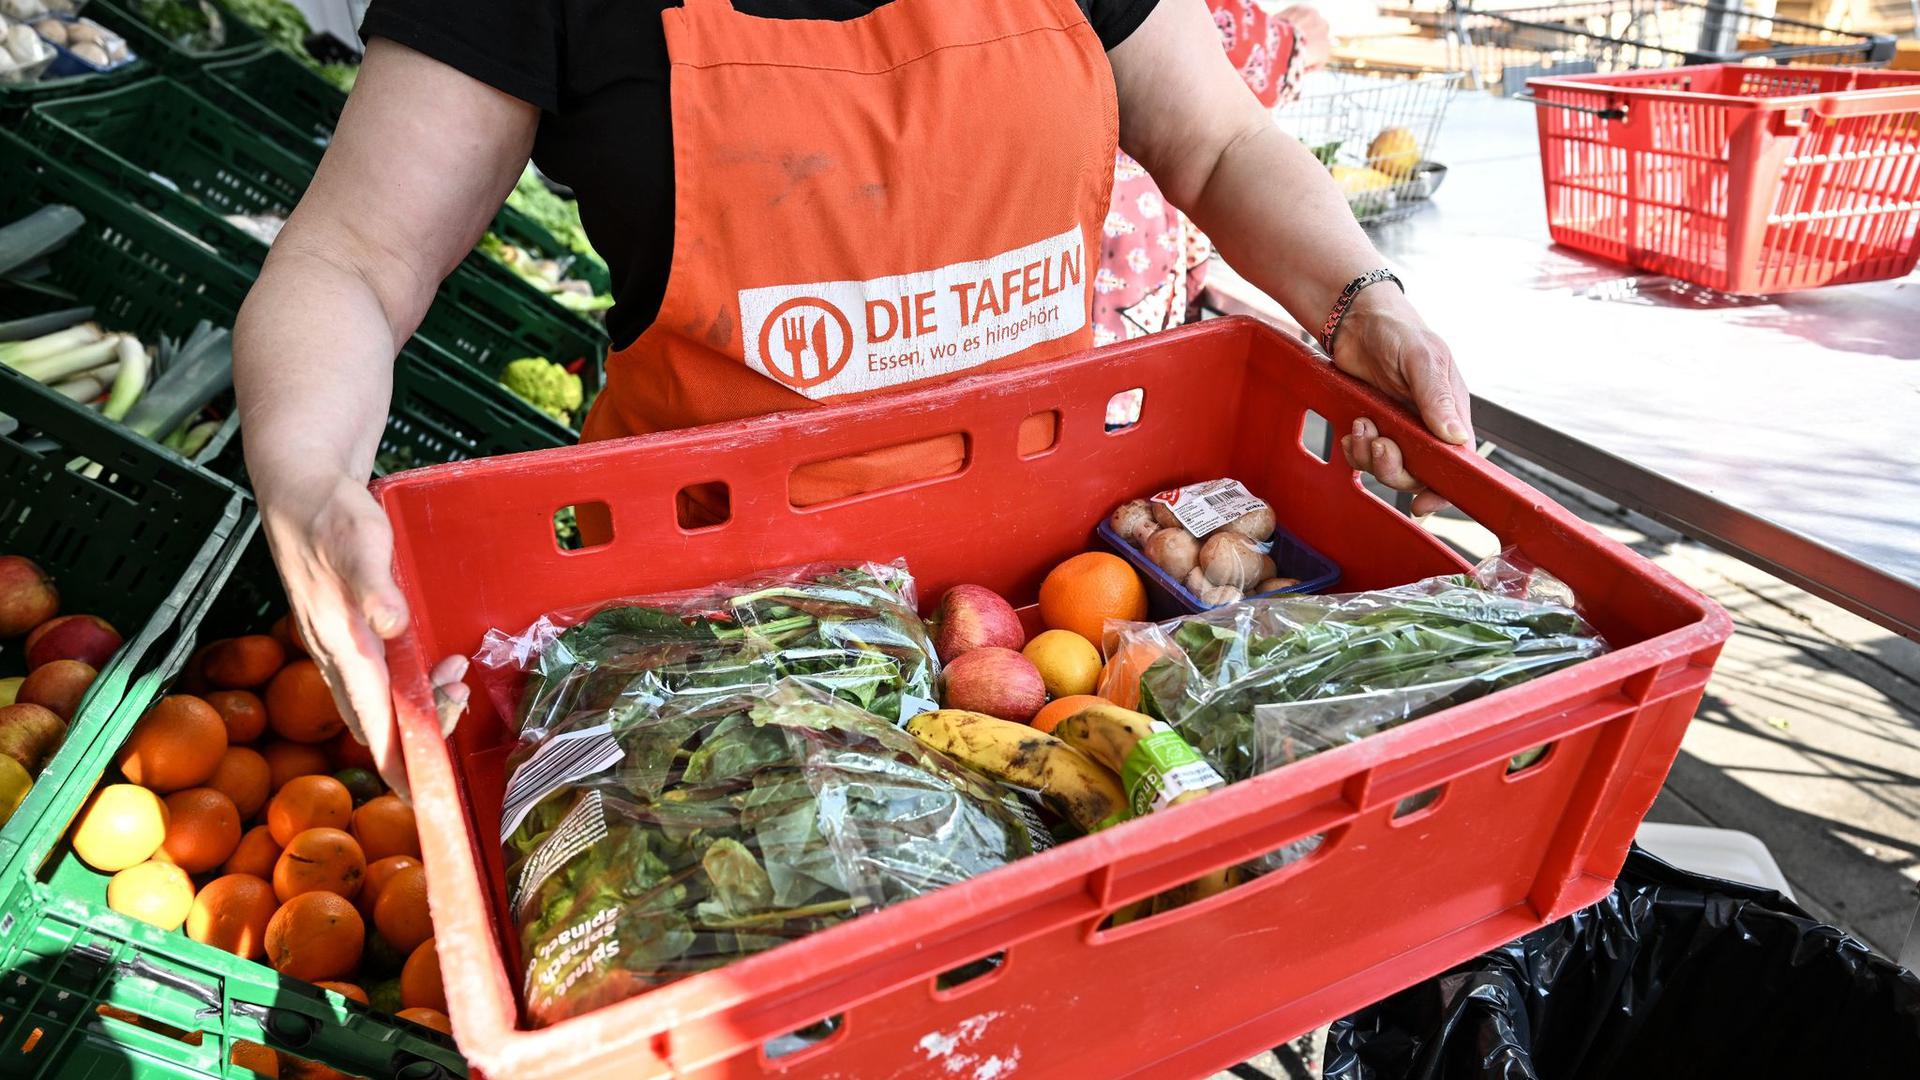 Eine Mitarbeiterin des Tafel-Ladens trägt eine Kiste voll mit Obst und Gemüse.